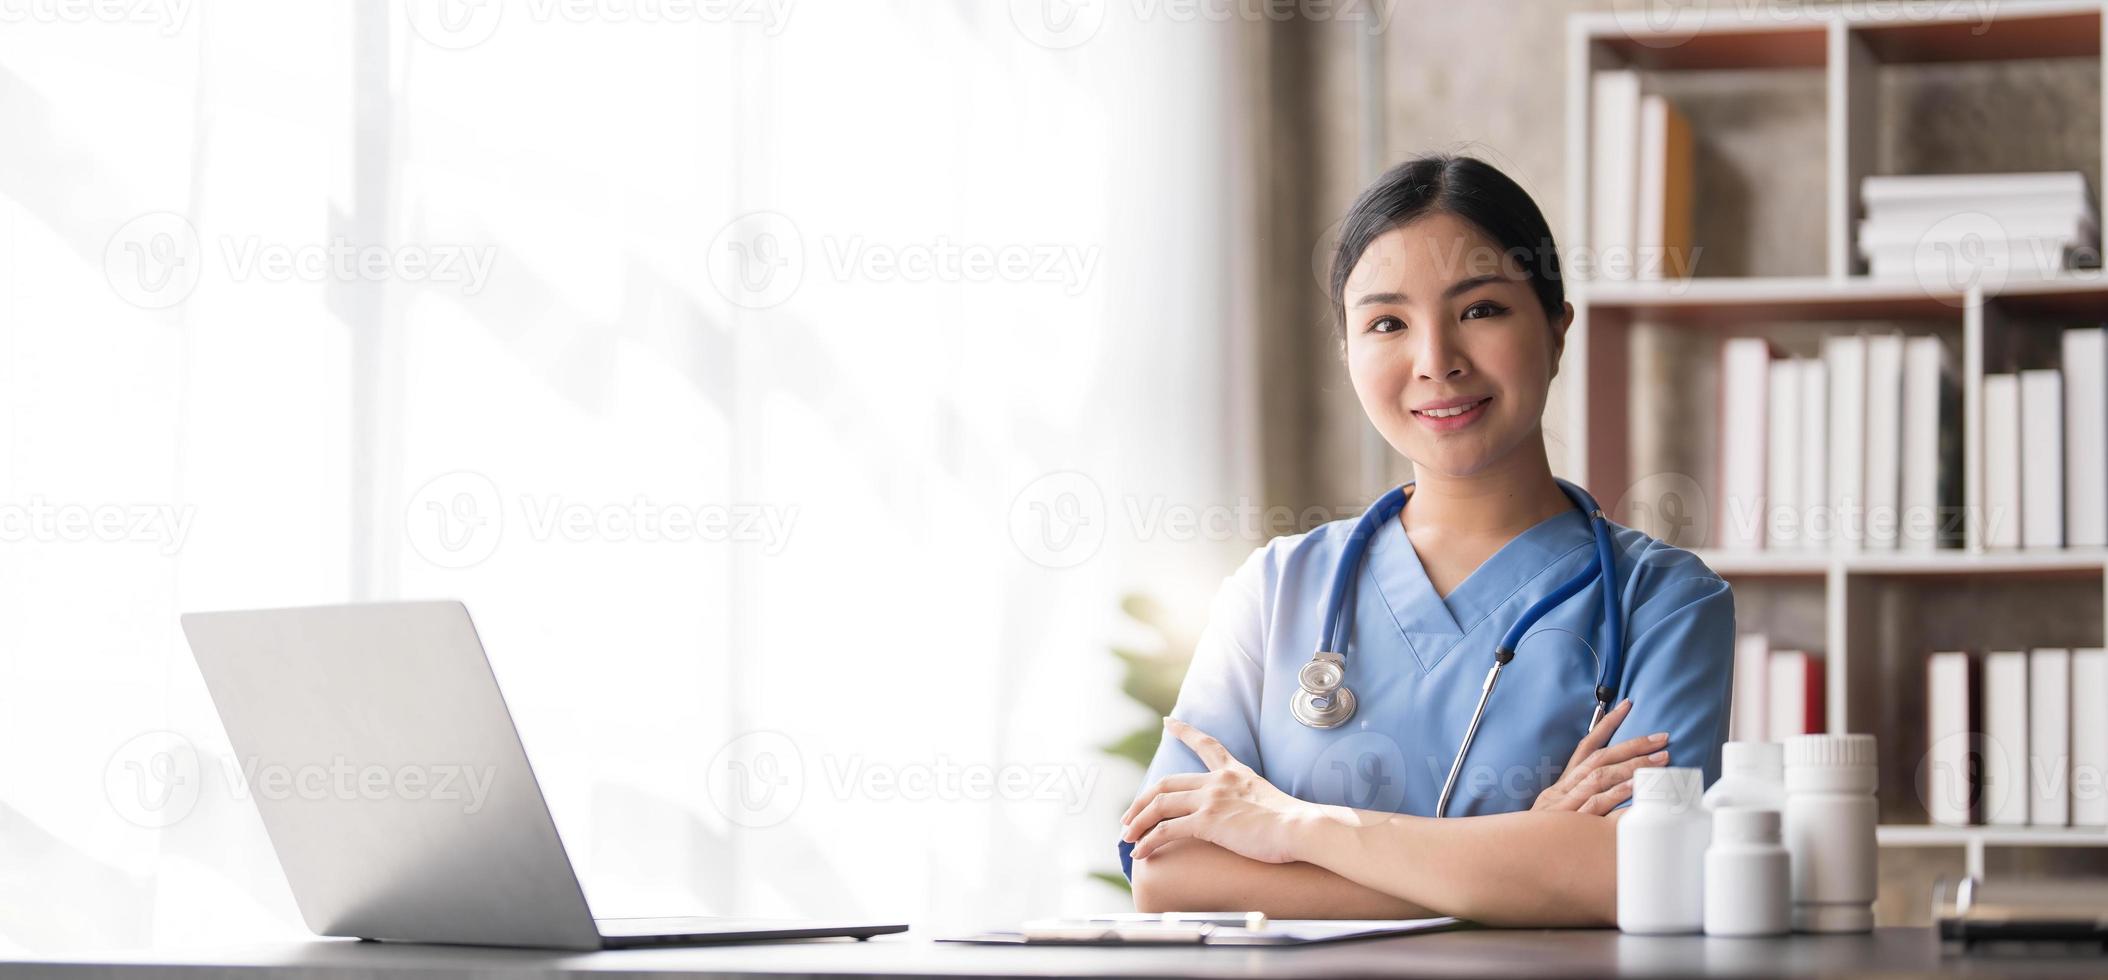 asiatisk läkare ung skön kvinna leende använder sig av arbetssätt med en bärbar dator dator och henne skrivning något på pappersarbete eller Urklipp vit papper på sjukhus skrivbord kontor, sjukvård medicinsk begrepp foto